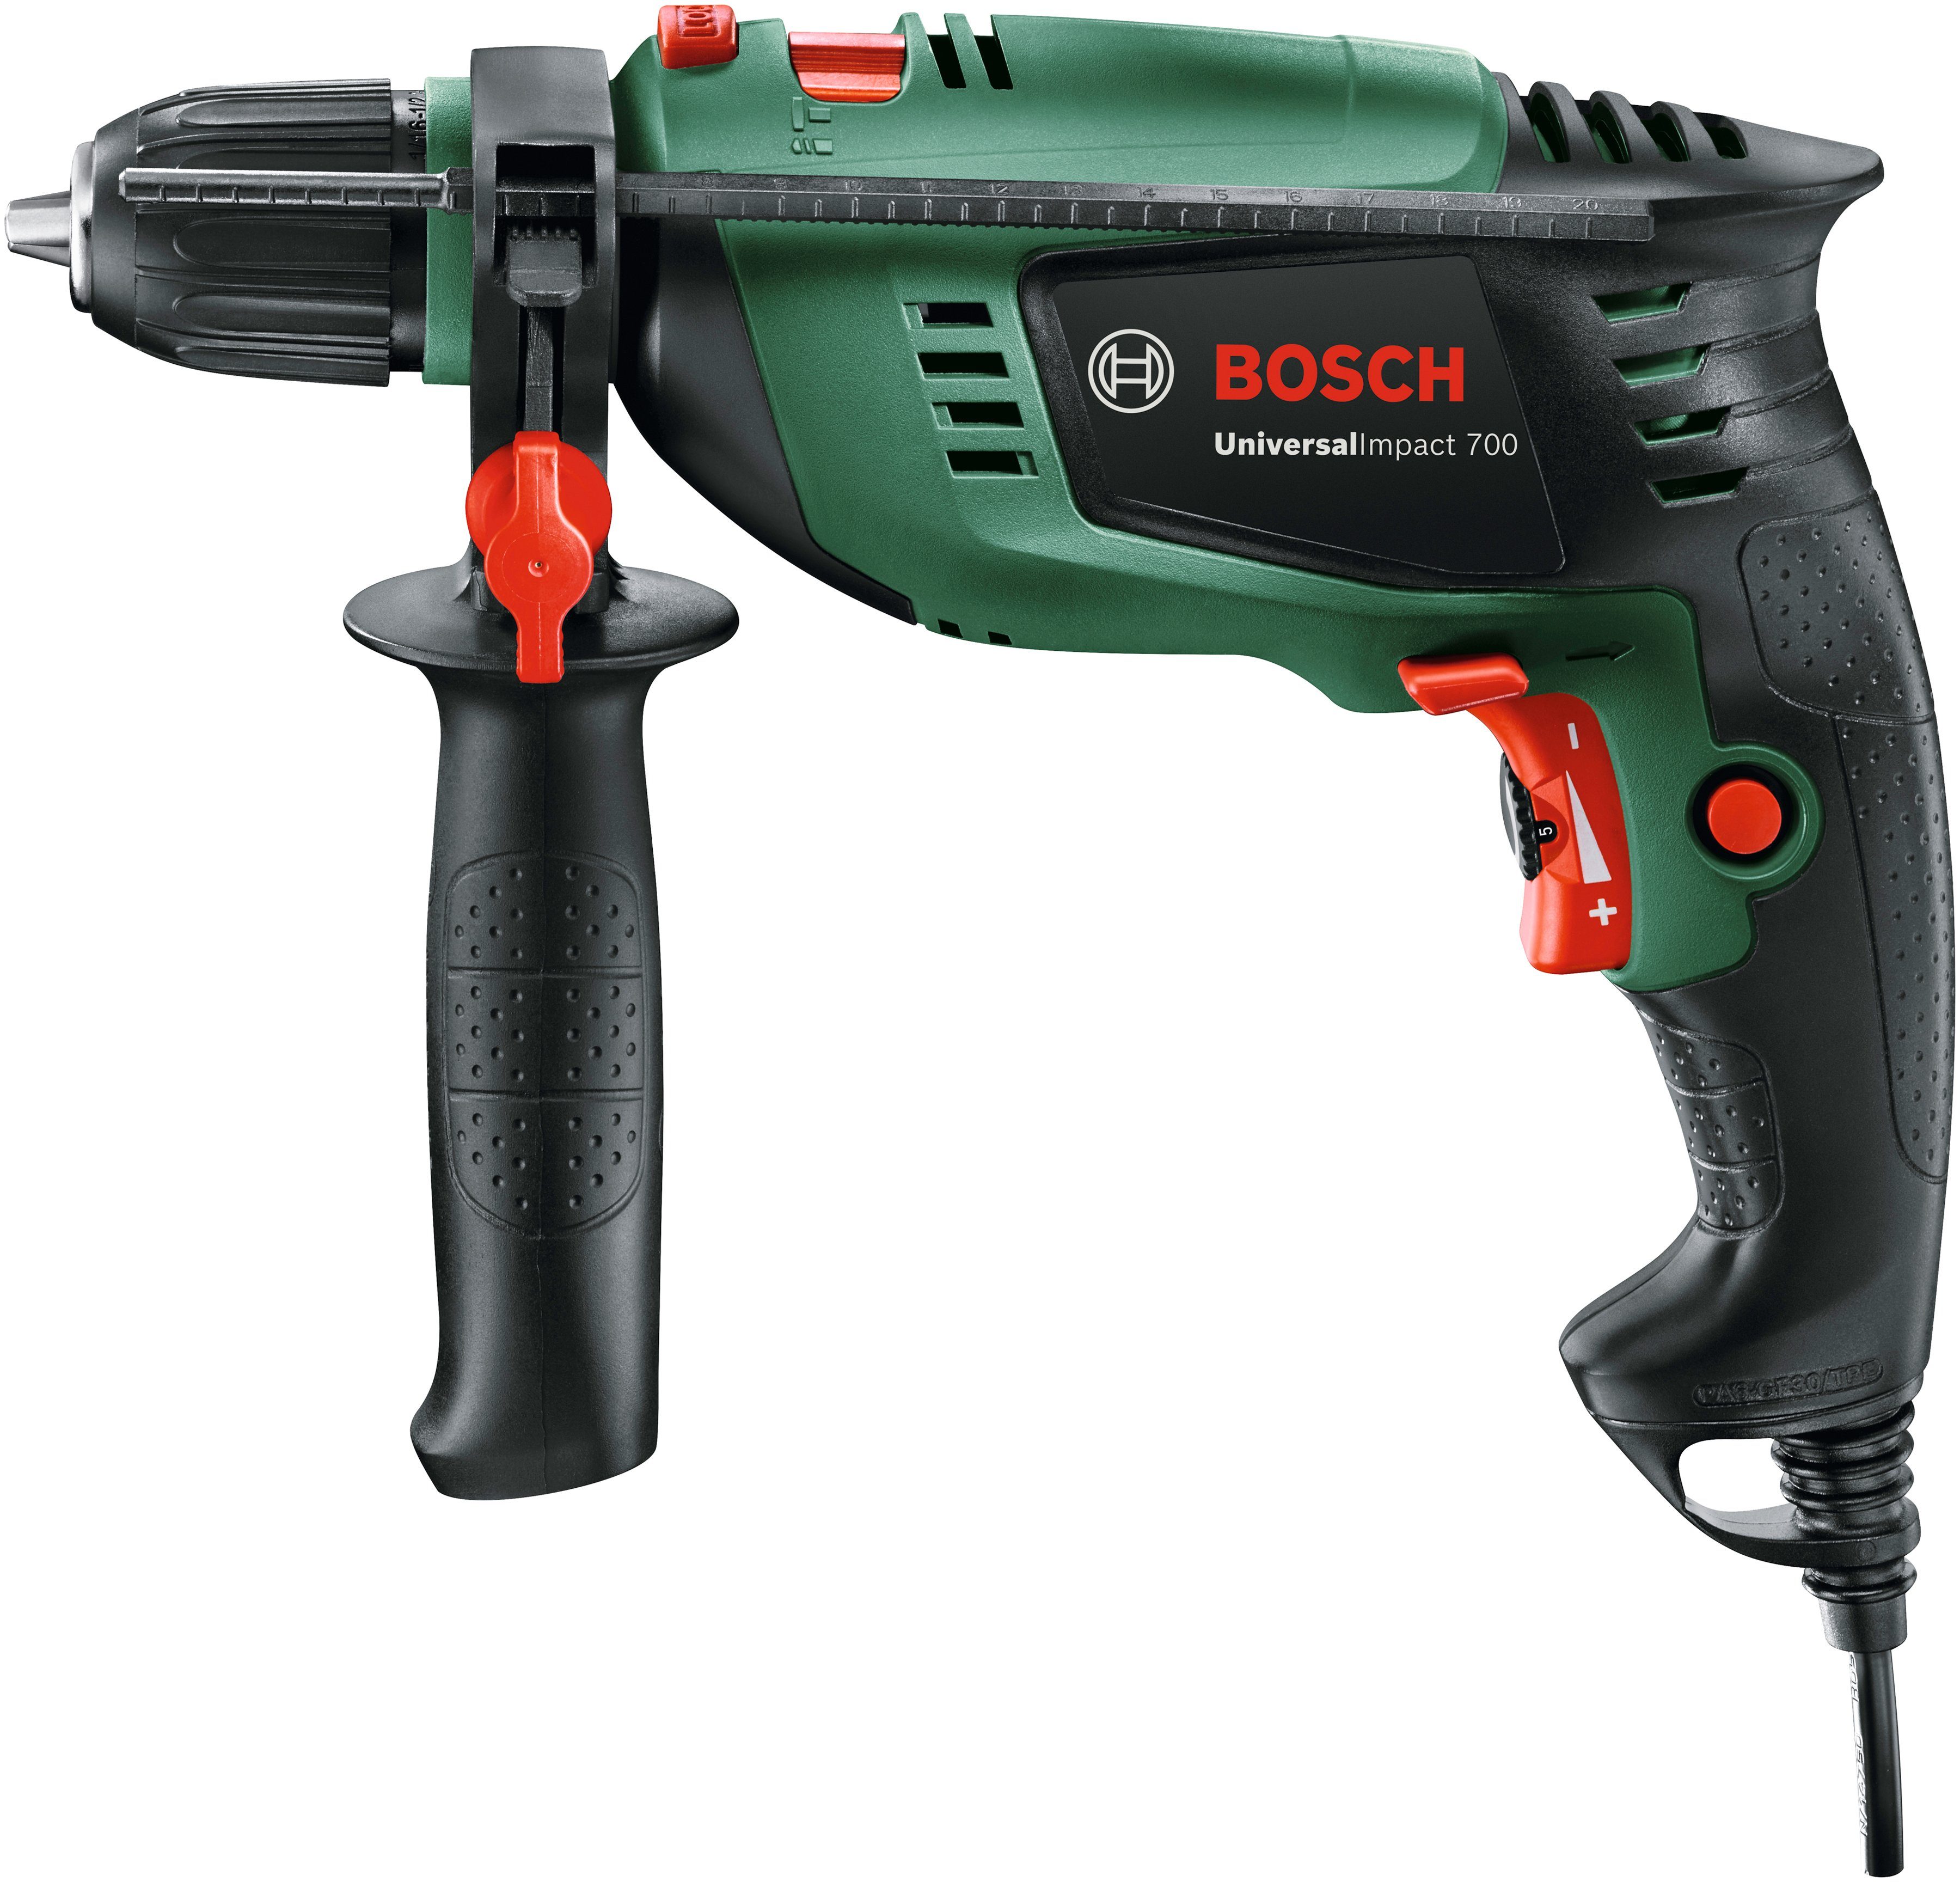 Bosch Home & Garden Schlagbohrmaschine UniversalImpact 700, max. U/min 3000